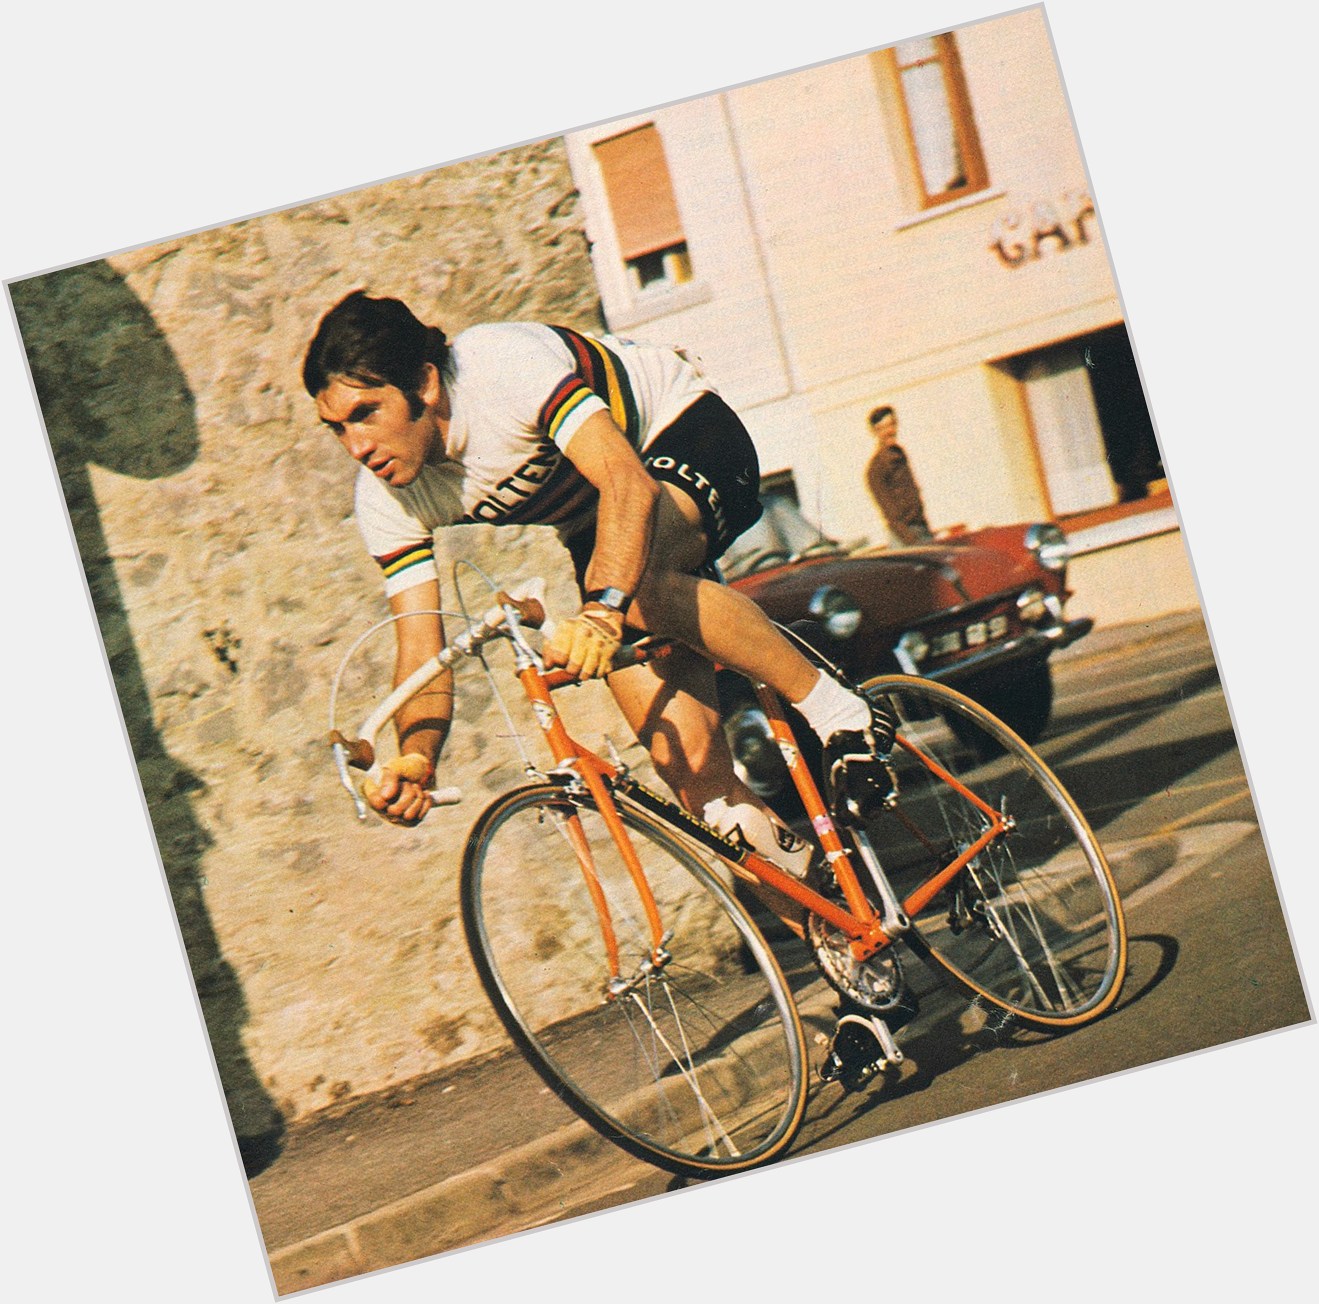 Eddy Merckx dating 2